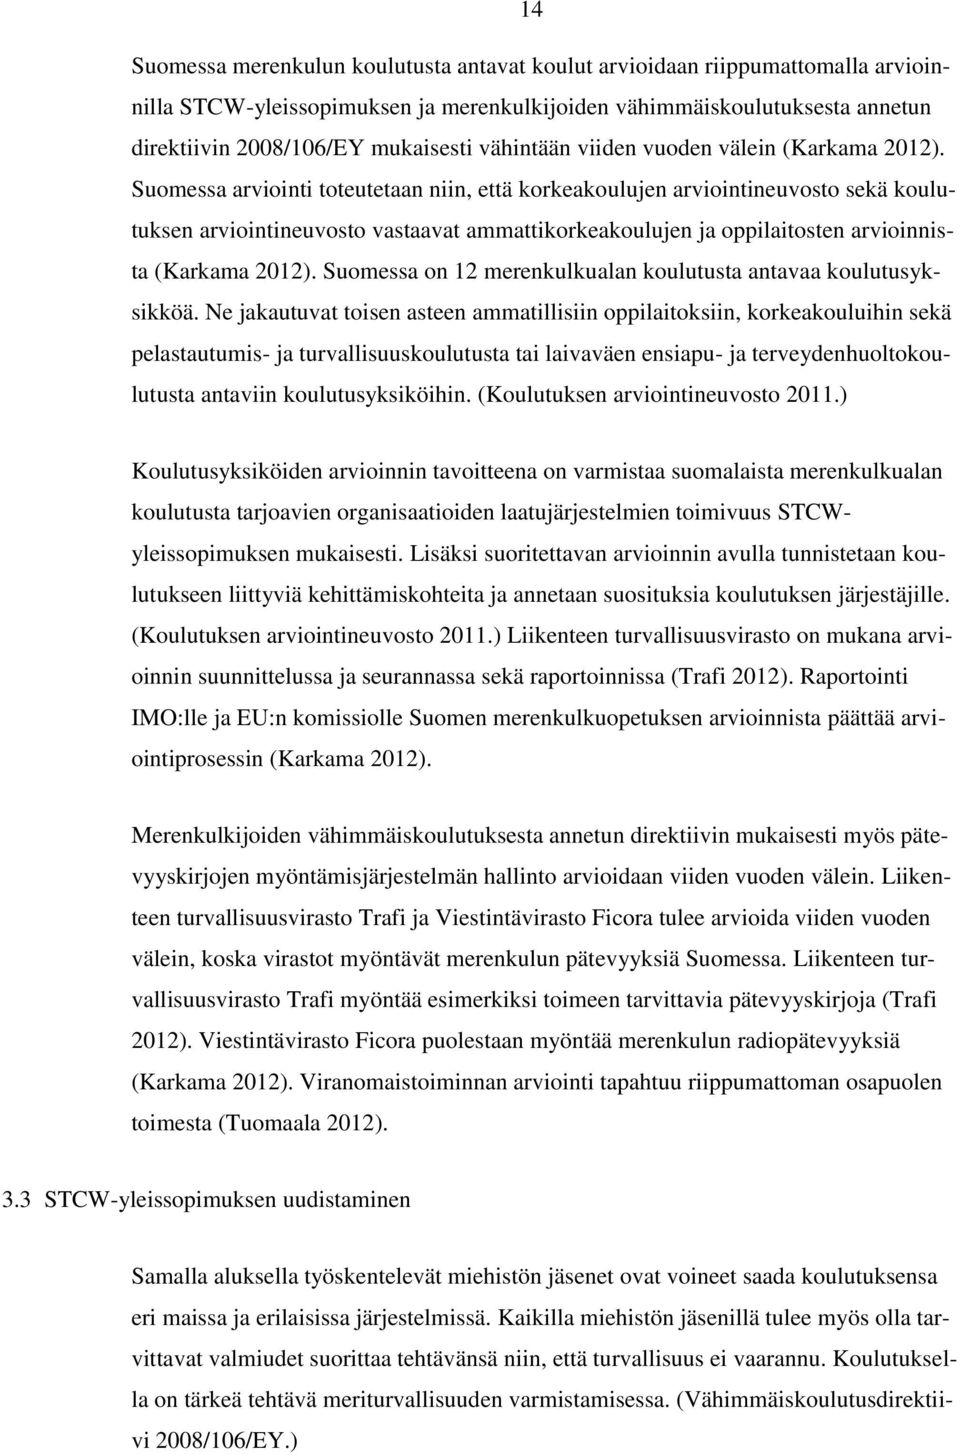 Suomessa arviointi toteutetaan niin, että korkeakoulujen arviointineuvosto sekä koulutuksen arviointineuvosto vastaavat ammattikorkeakoulujen ja oppilaitosten arvioinnista (Karkama 2012).